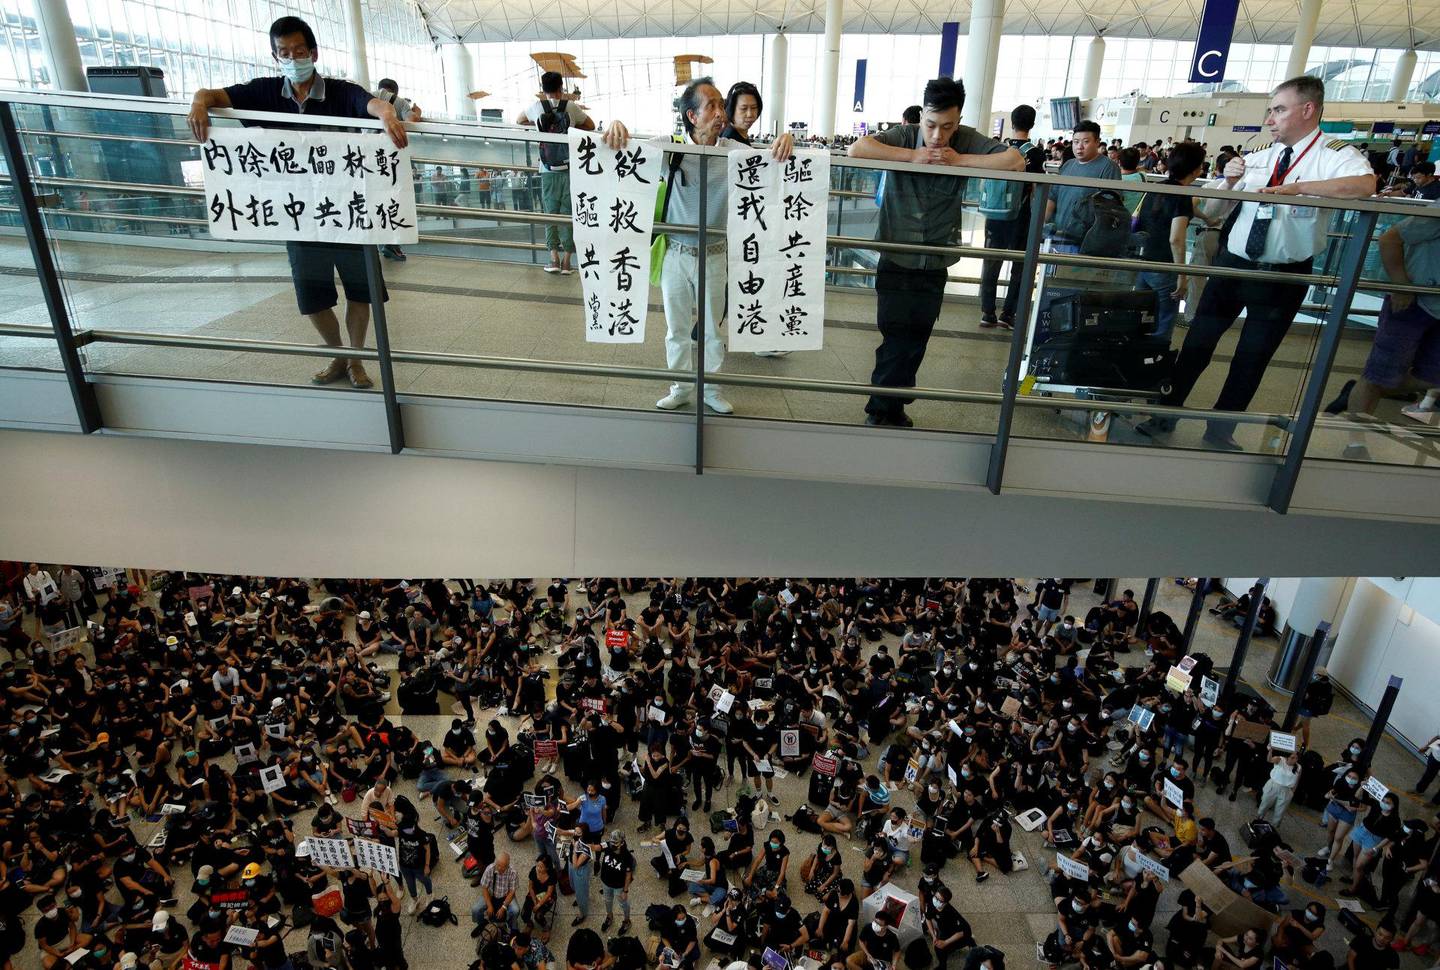 fLYPLASS: Det er ingen opptøyer, bara tyranni! ropet mange av demonstrantene på flyplassen. (NTB SCANPIX)